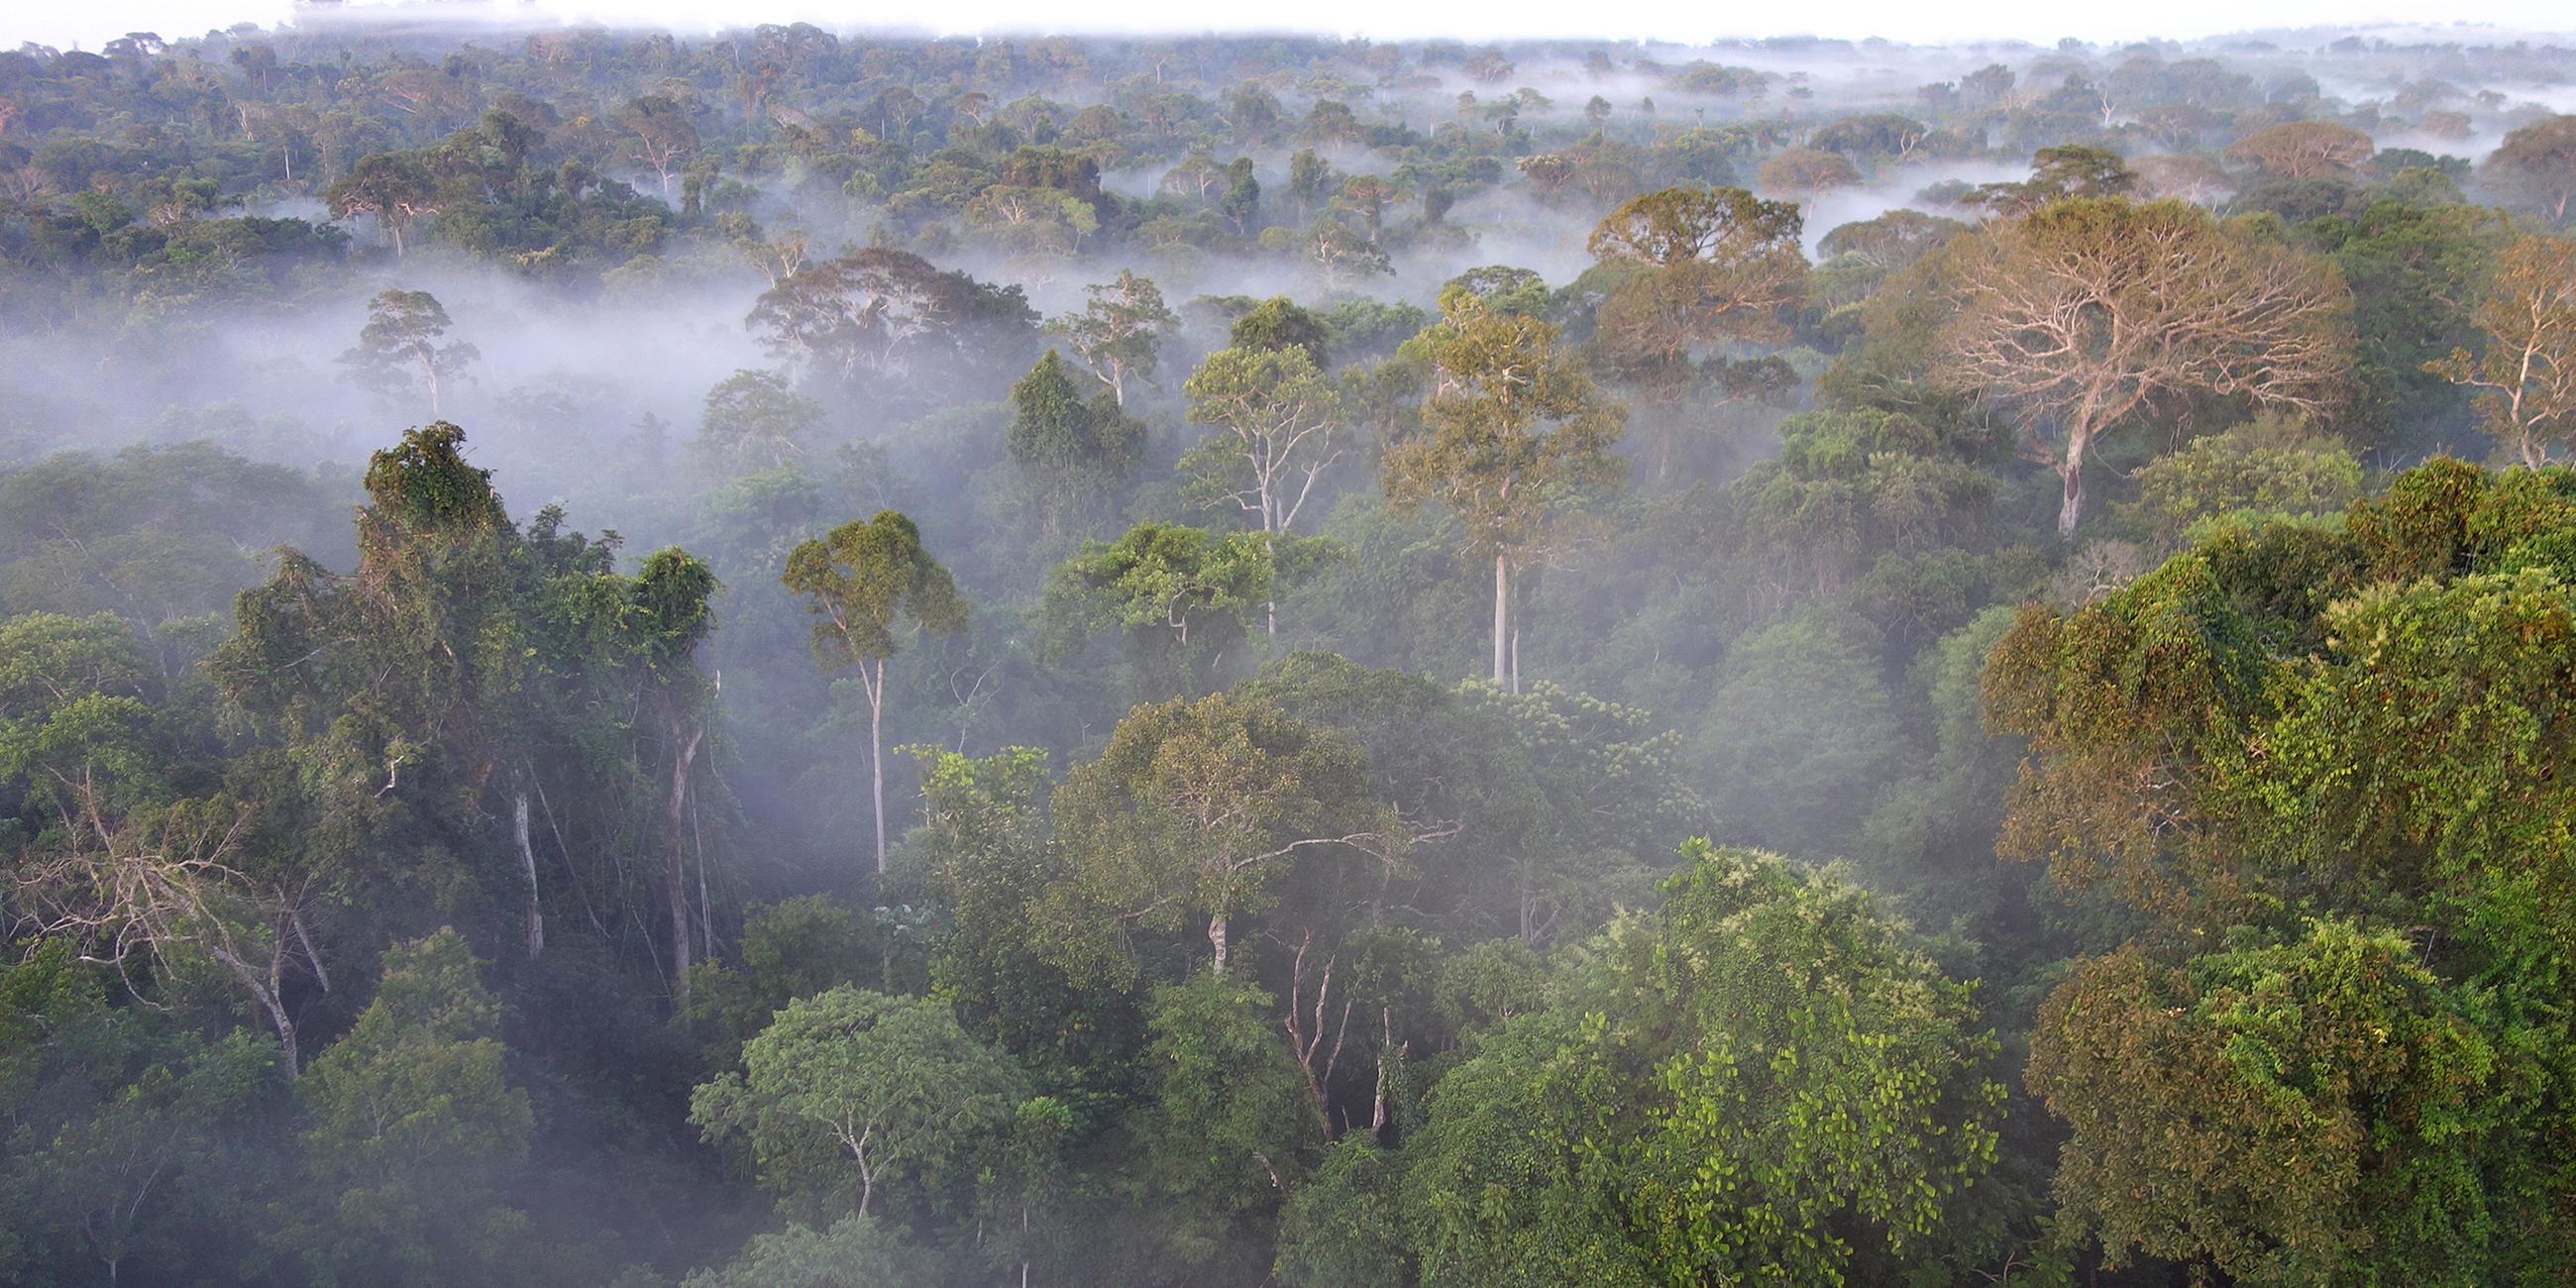 Der Amazonas Regenwald, die "Grüne Lunge" des Planeten und für einige Wissenschaftler der entscheidende Motor im weltweiten CO2- und Wasserhaushalt.